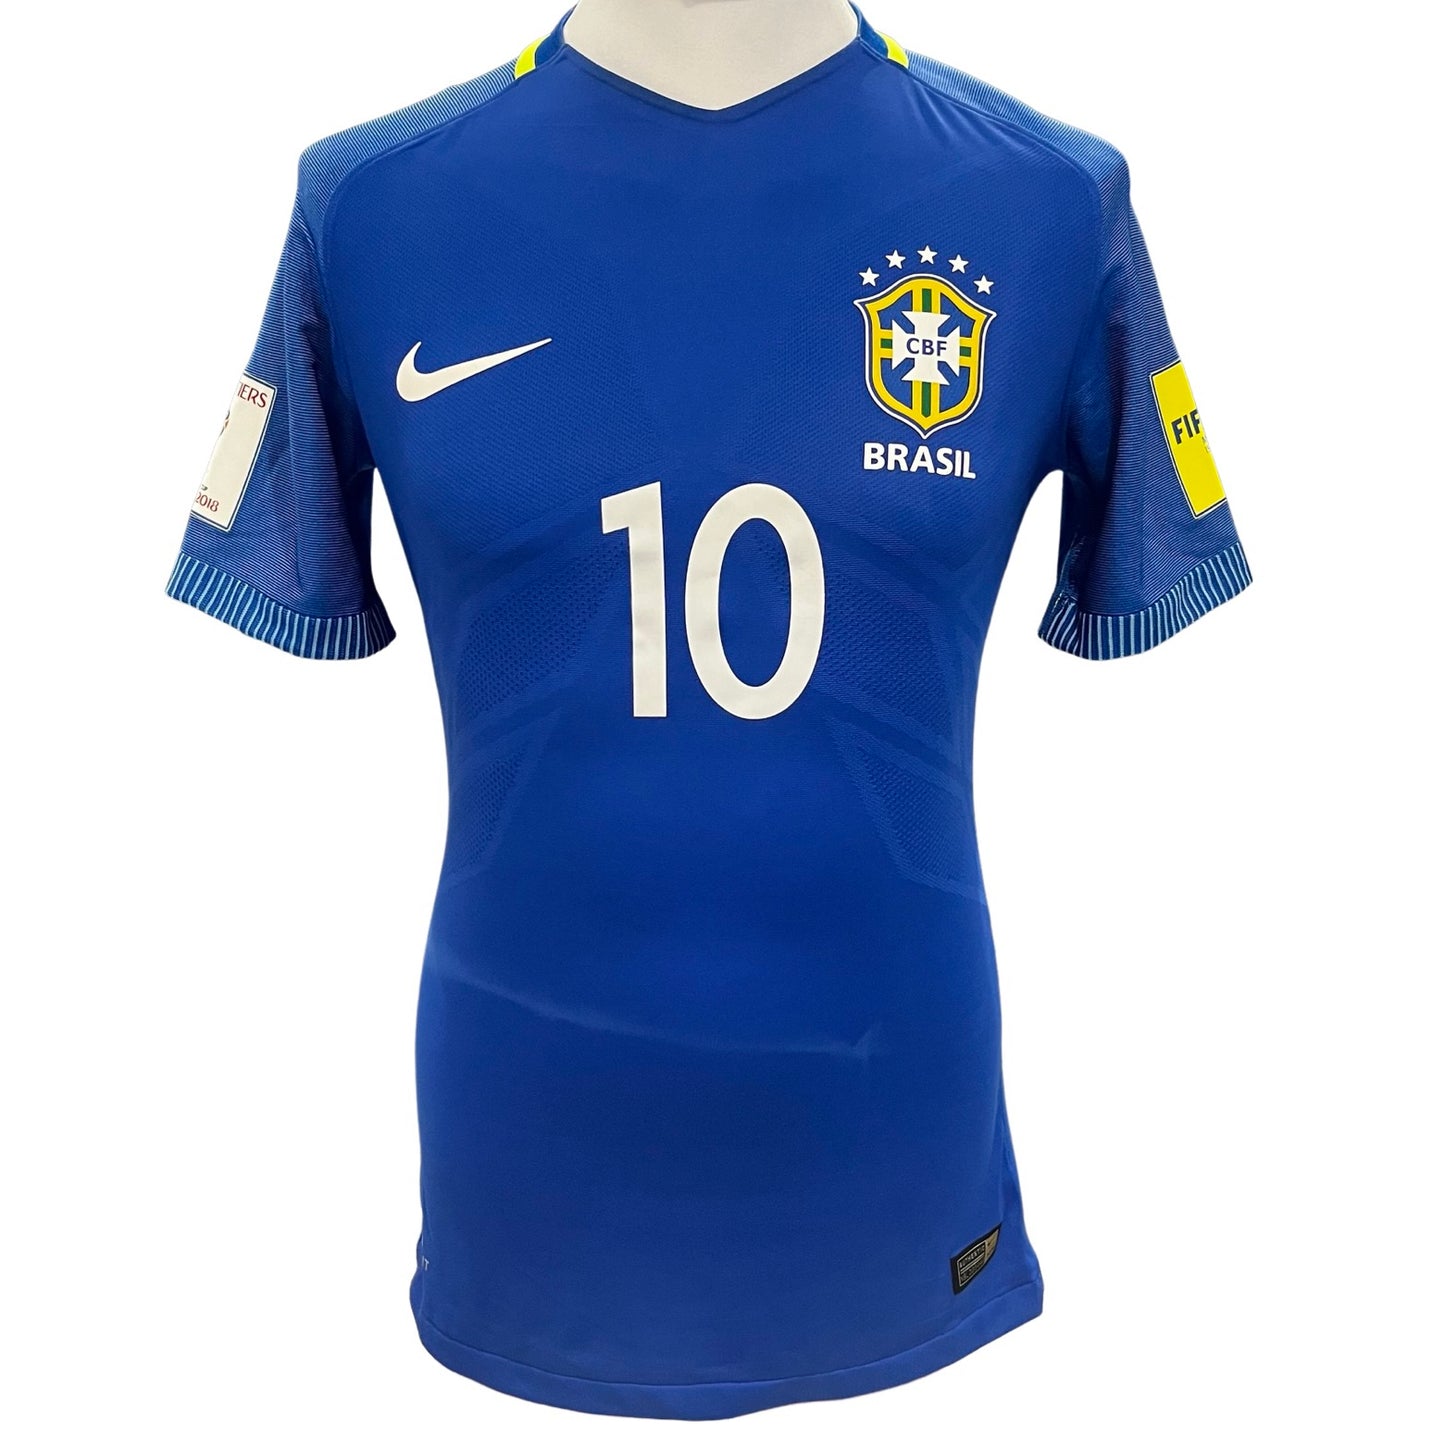 Jogo de Neymar Jr Camisa Nike Dri-Fit usada Brasil x Equador Copa do Mundo FIFA 2018 Qualifer